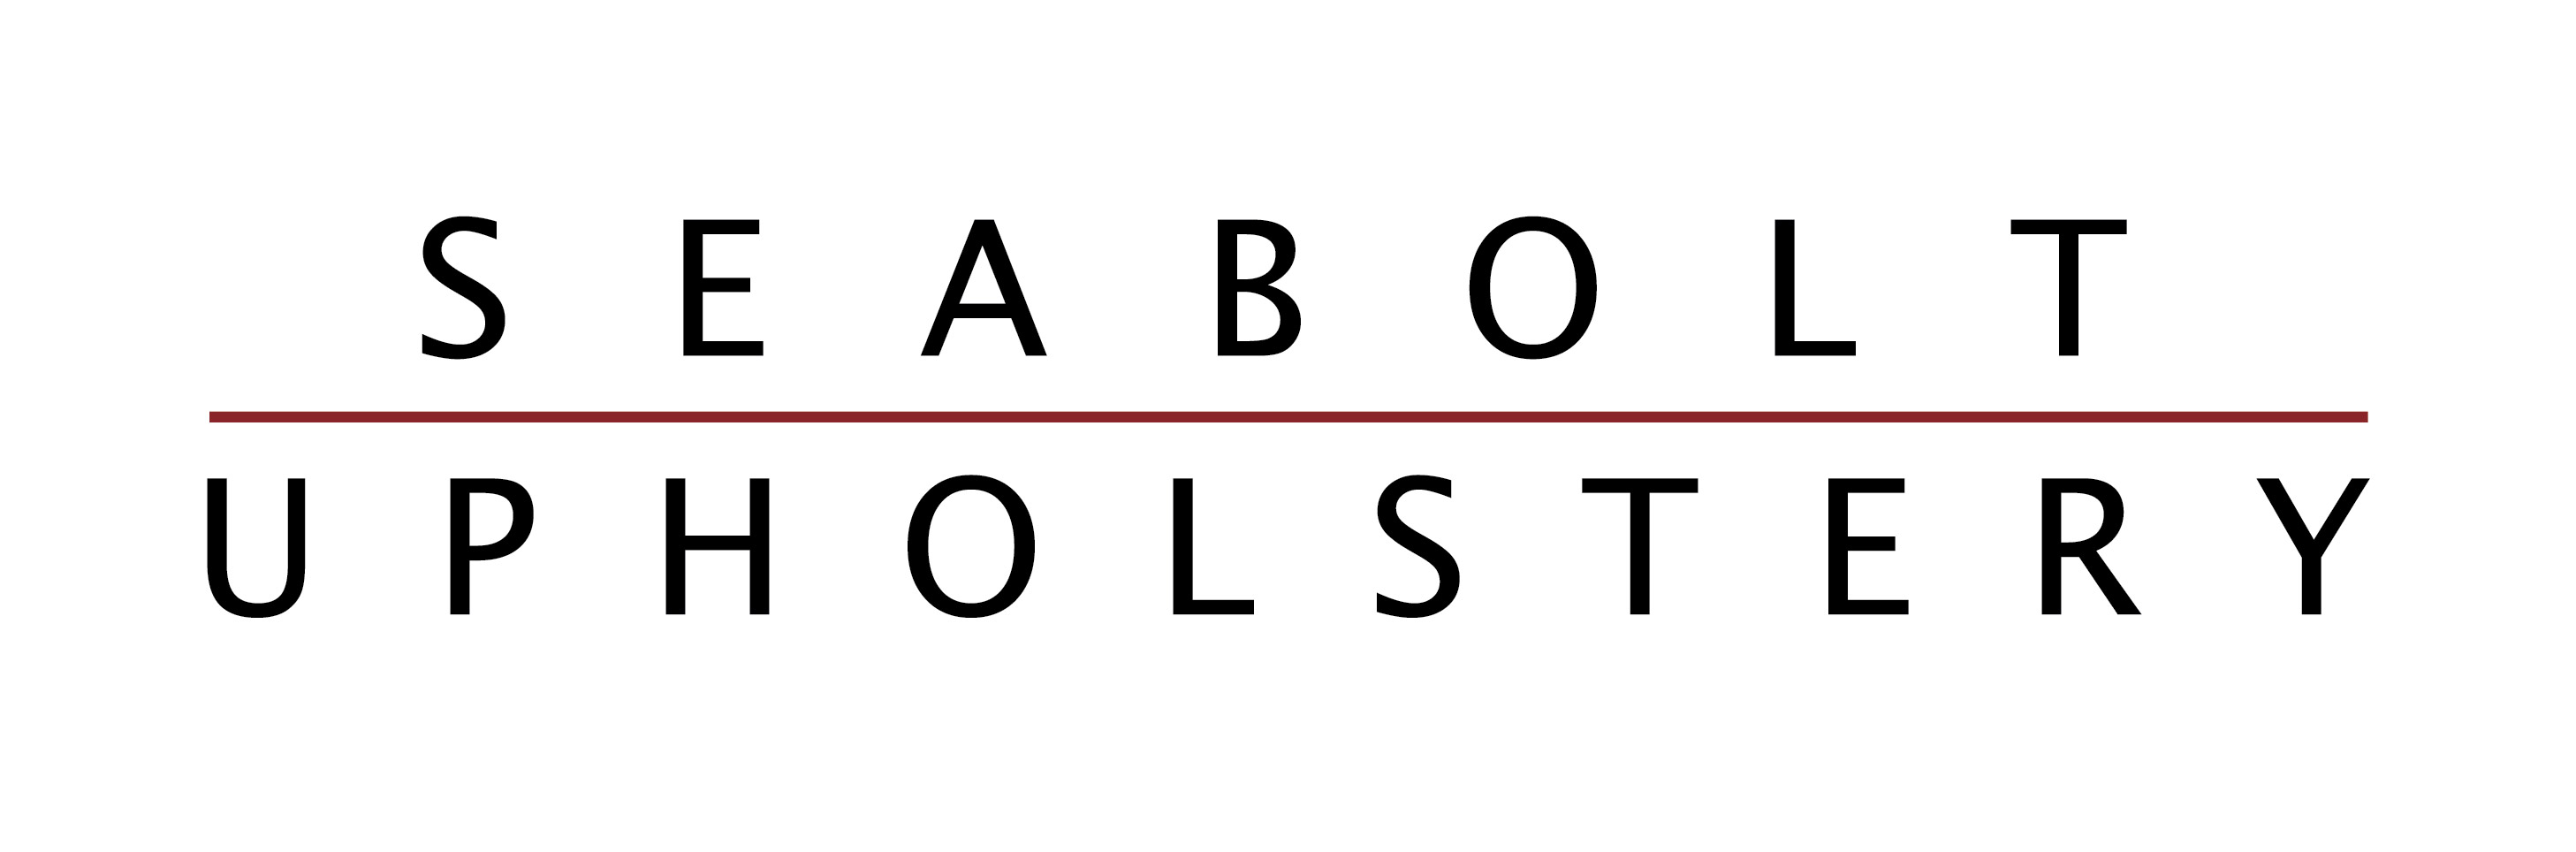 Seabolt Upholstery | Seabolt Upholstery Logo